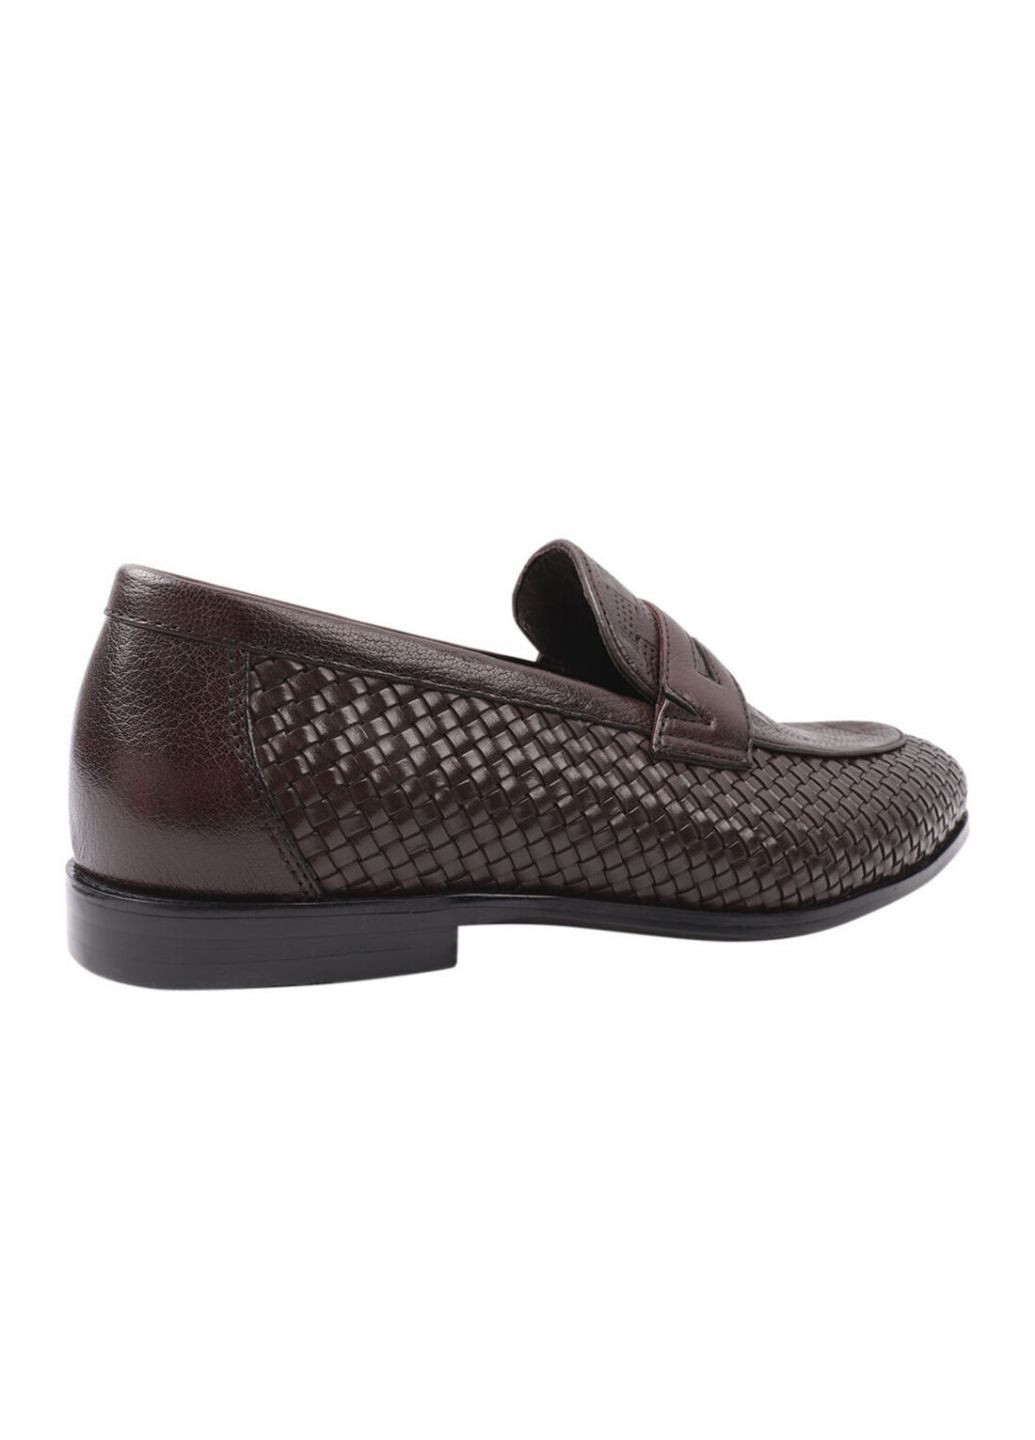 Туфлі чоловічі з натуральної шкіри, на низькому ходу, коричневі, Lido Marinozi Lido Marinozzi 206-21dt (257438148)